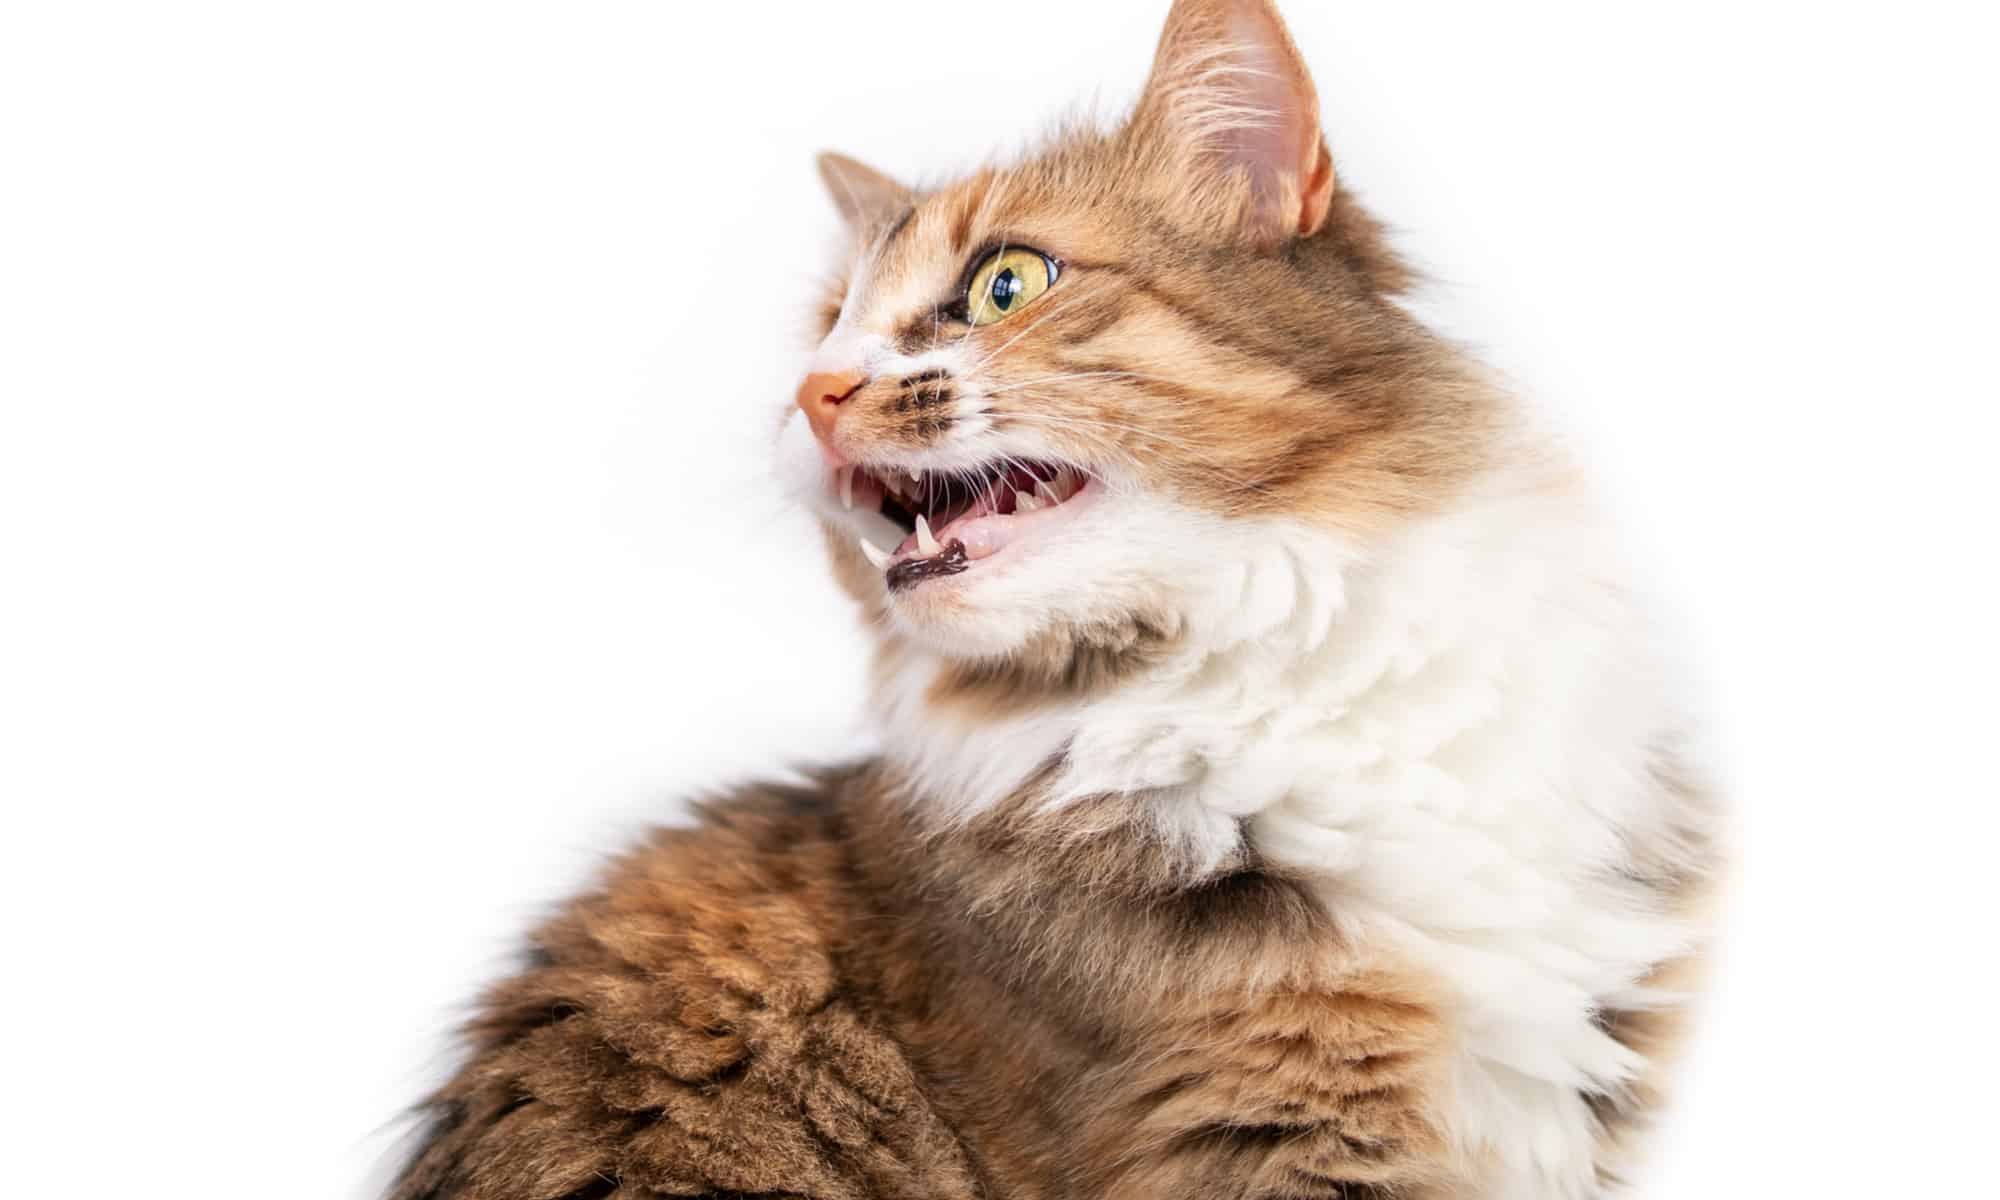 Cat on white background vocalizing